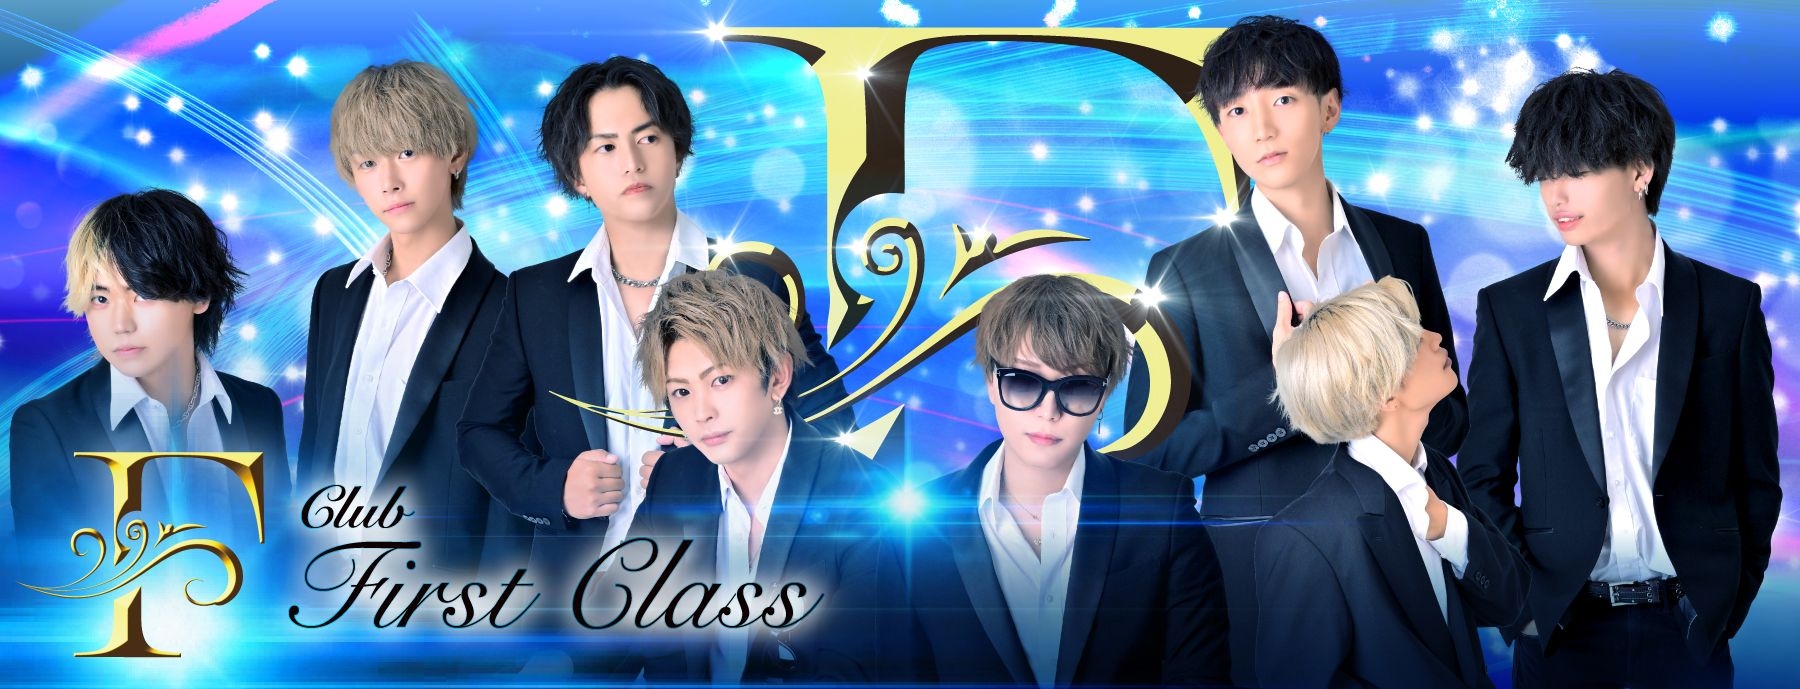 Club First Class 〜ファーストクラス〜